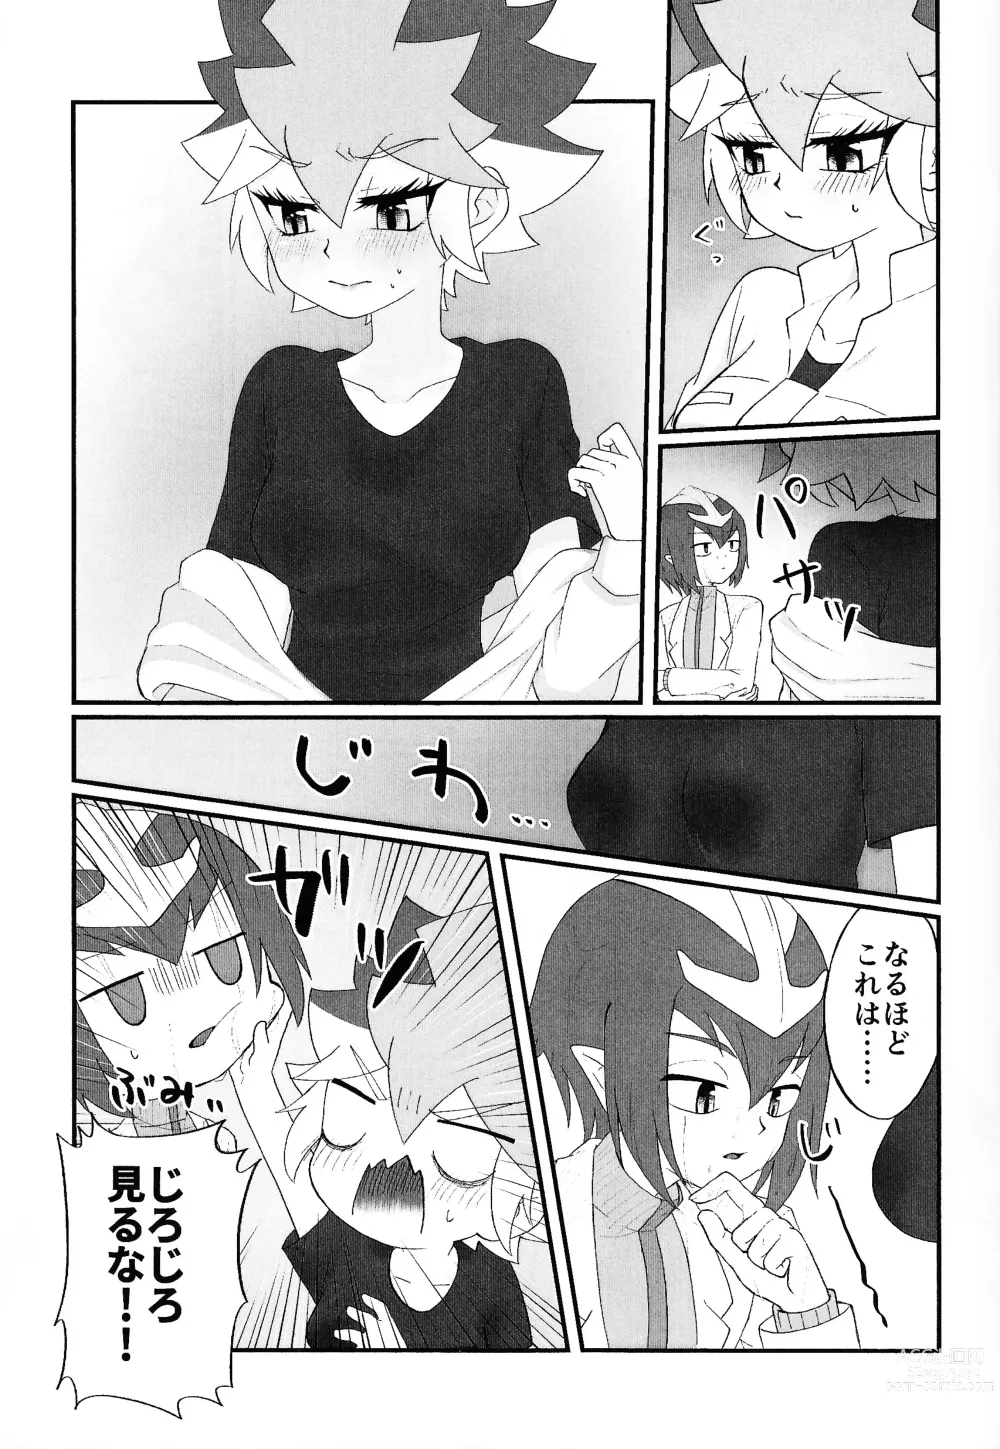 Page 16 of doujinshi Pandoranohako ka kindan no kajitsu ka